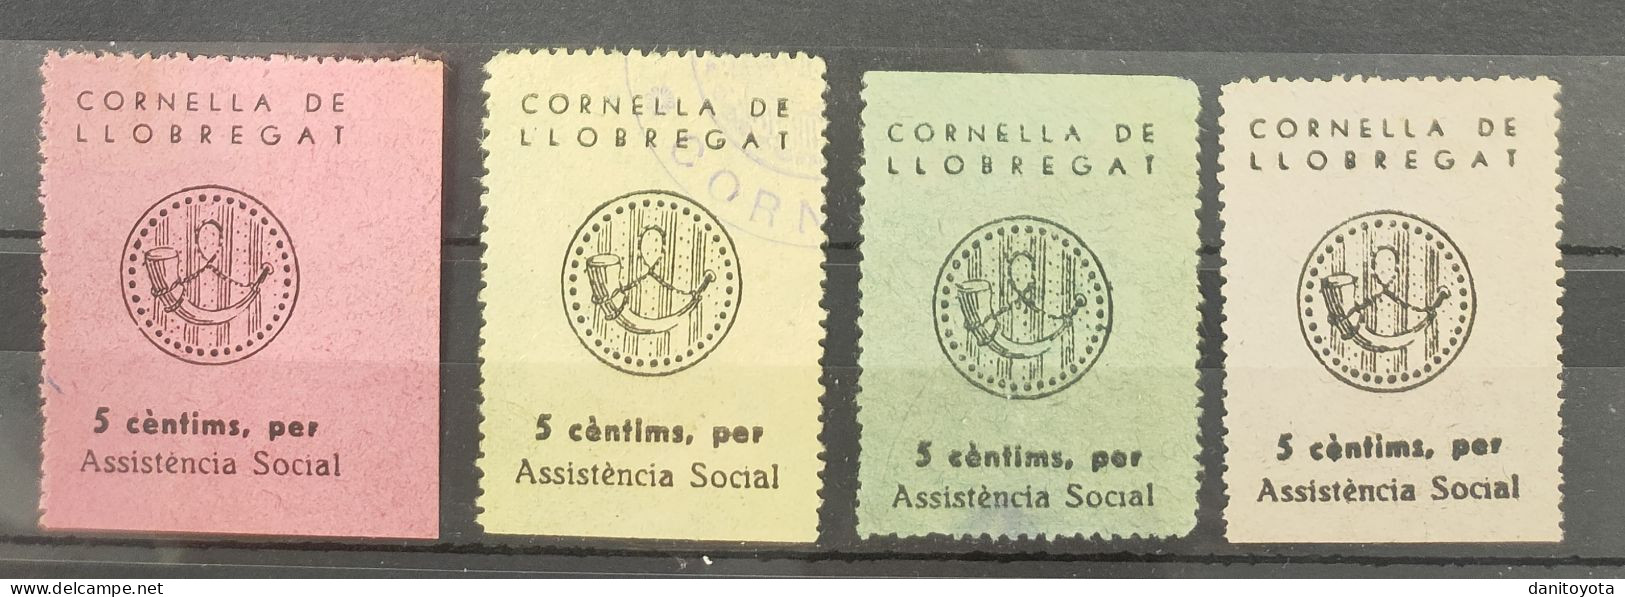 CORNELLA DE LLOBREGAT ( BARCELONA). 5 CTS ASSISTENCIA SOCIAL. LOTE DE 4 SELLOS. - Republikanische Ausgaben